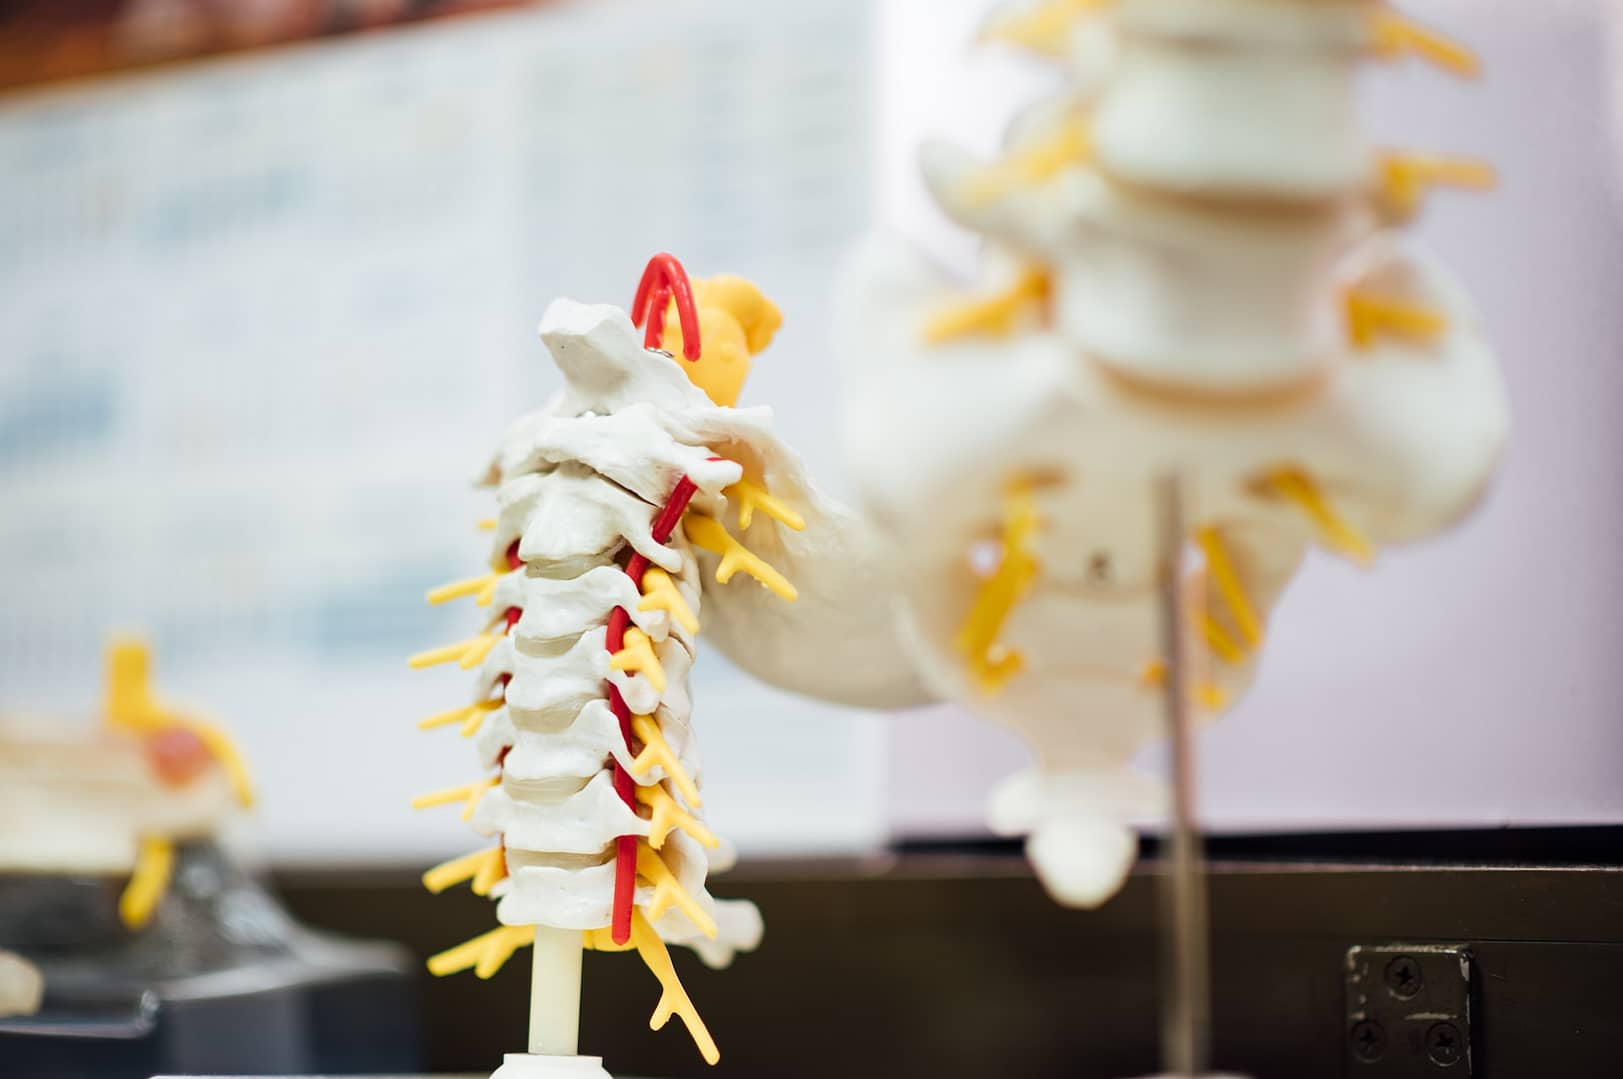 3d model of spine